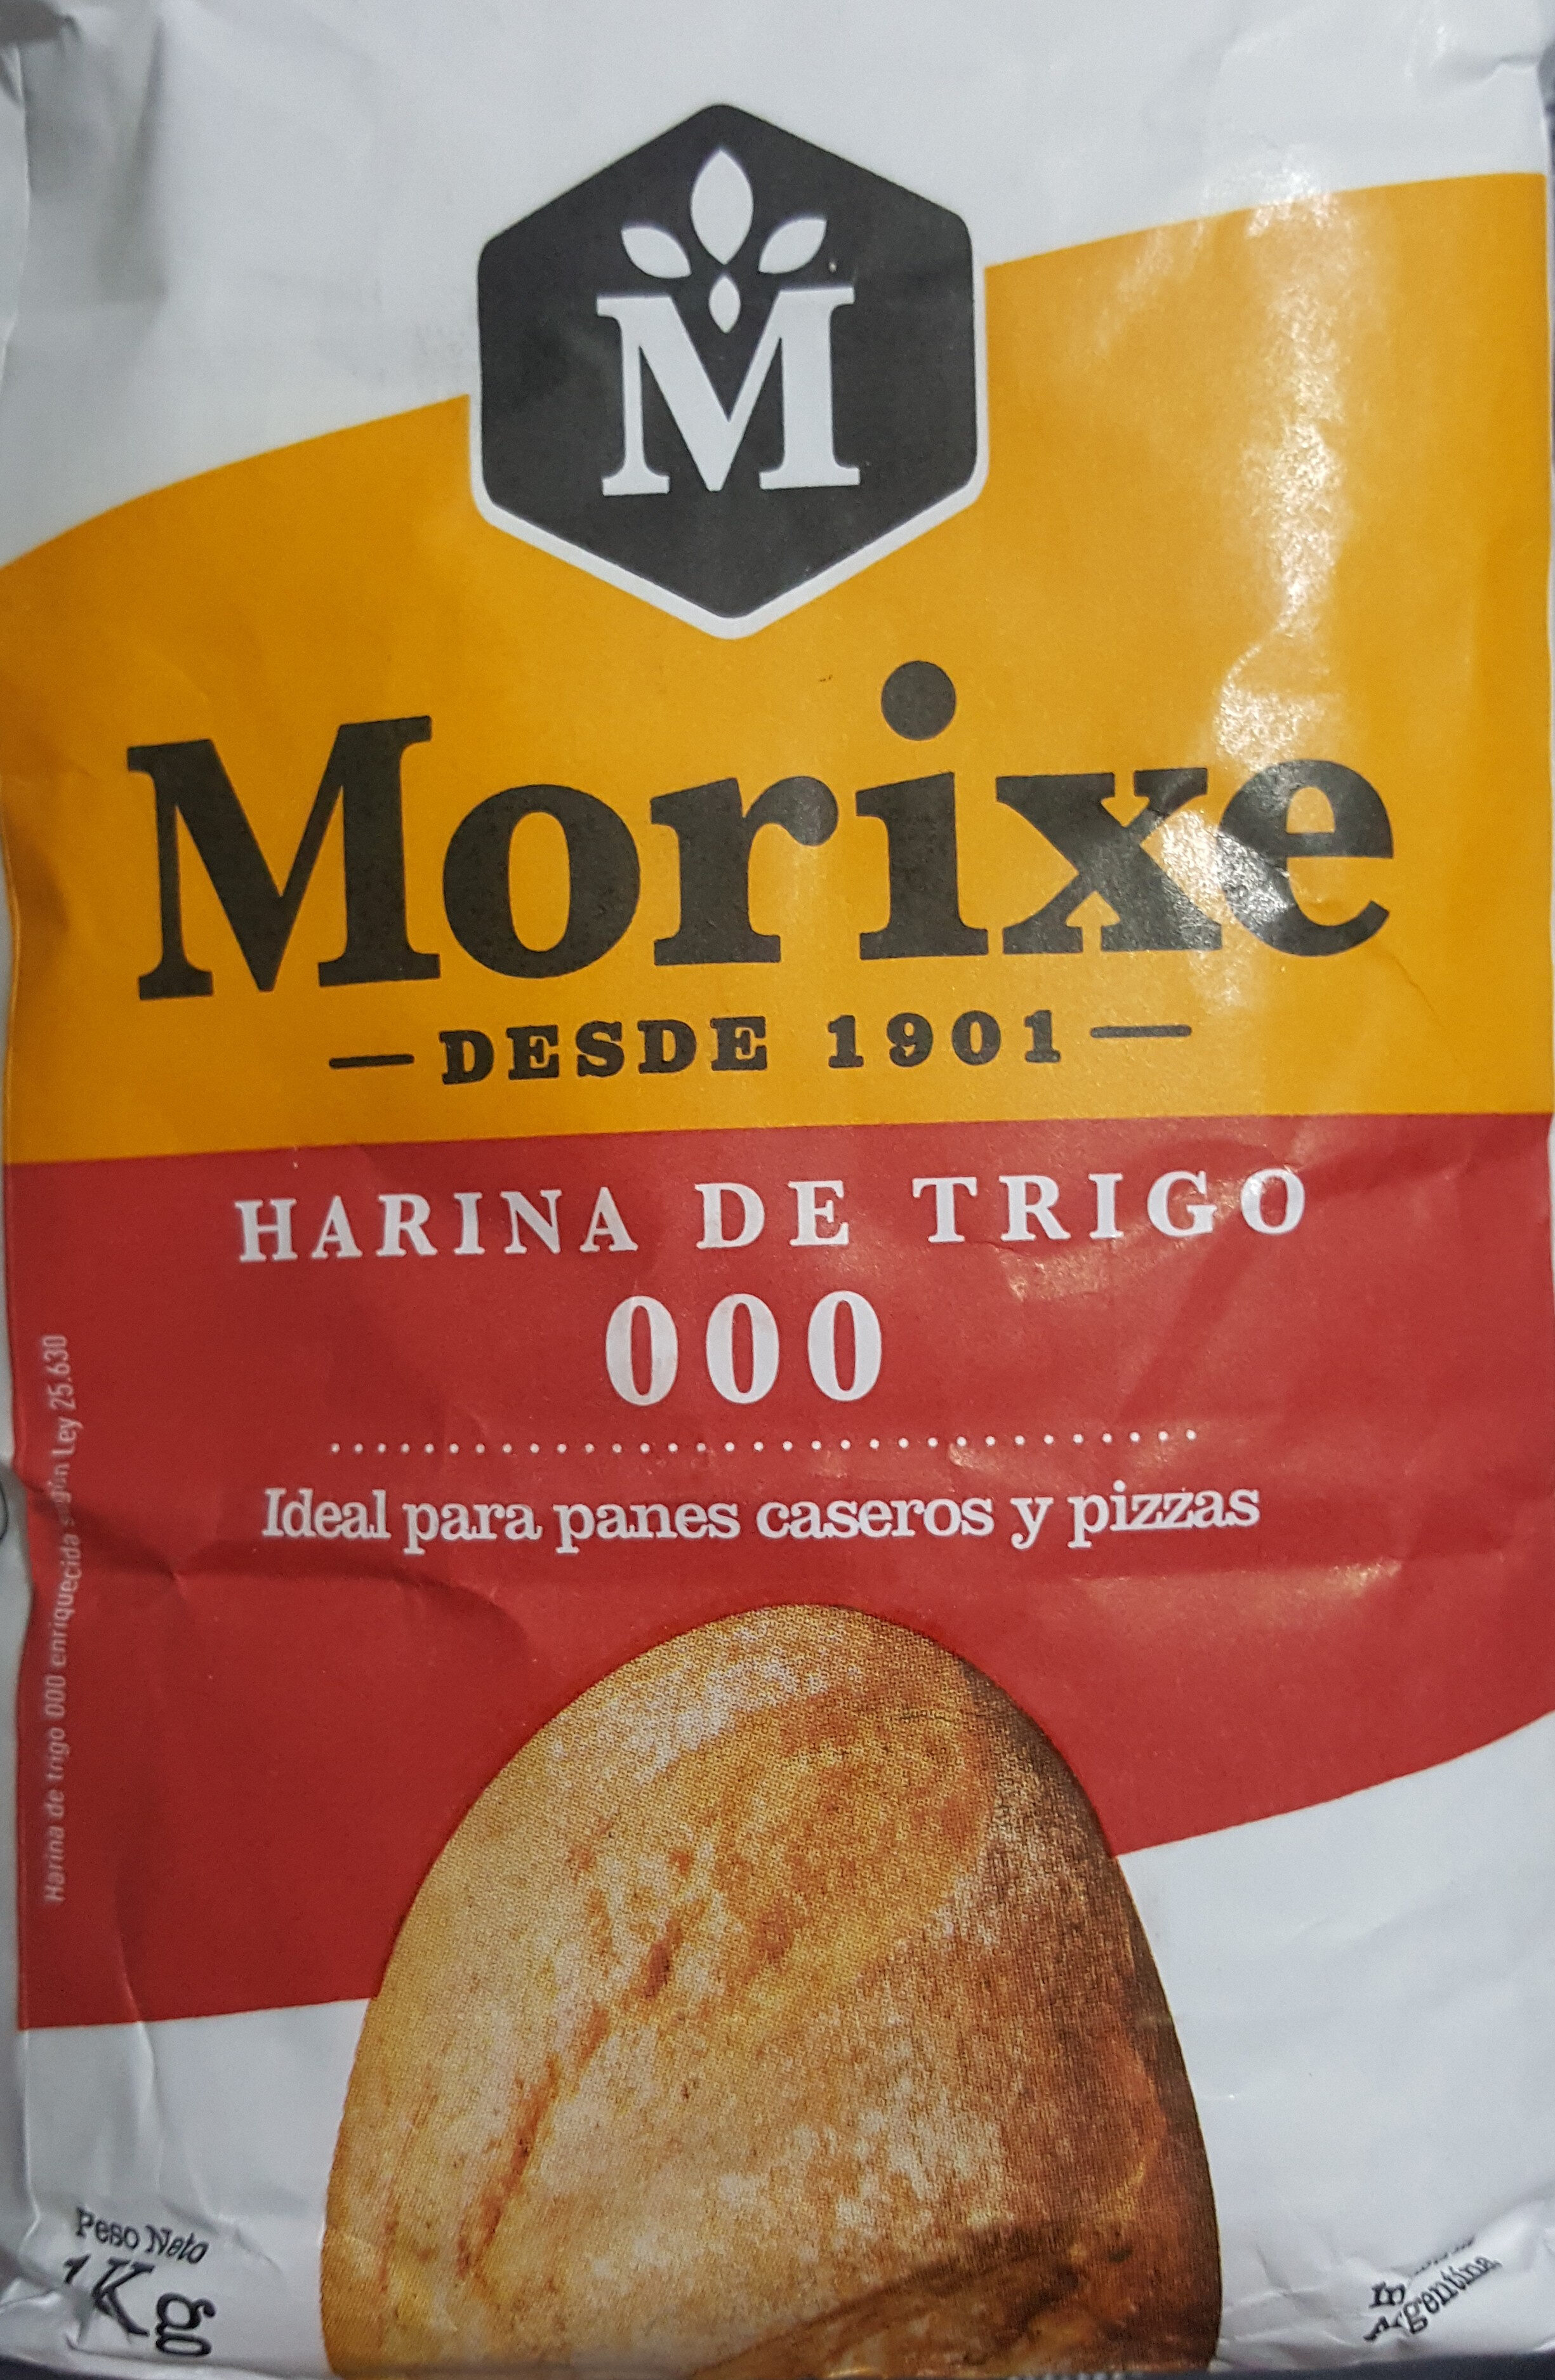 Harina de trigo 000 - Produit - es